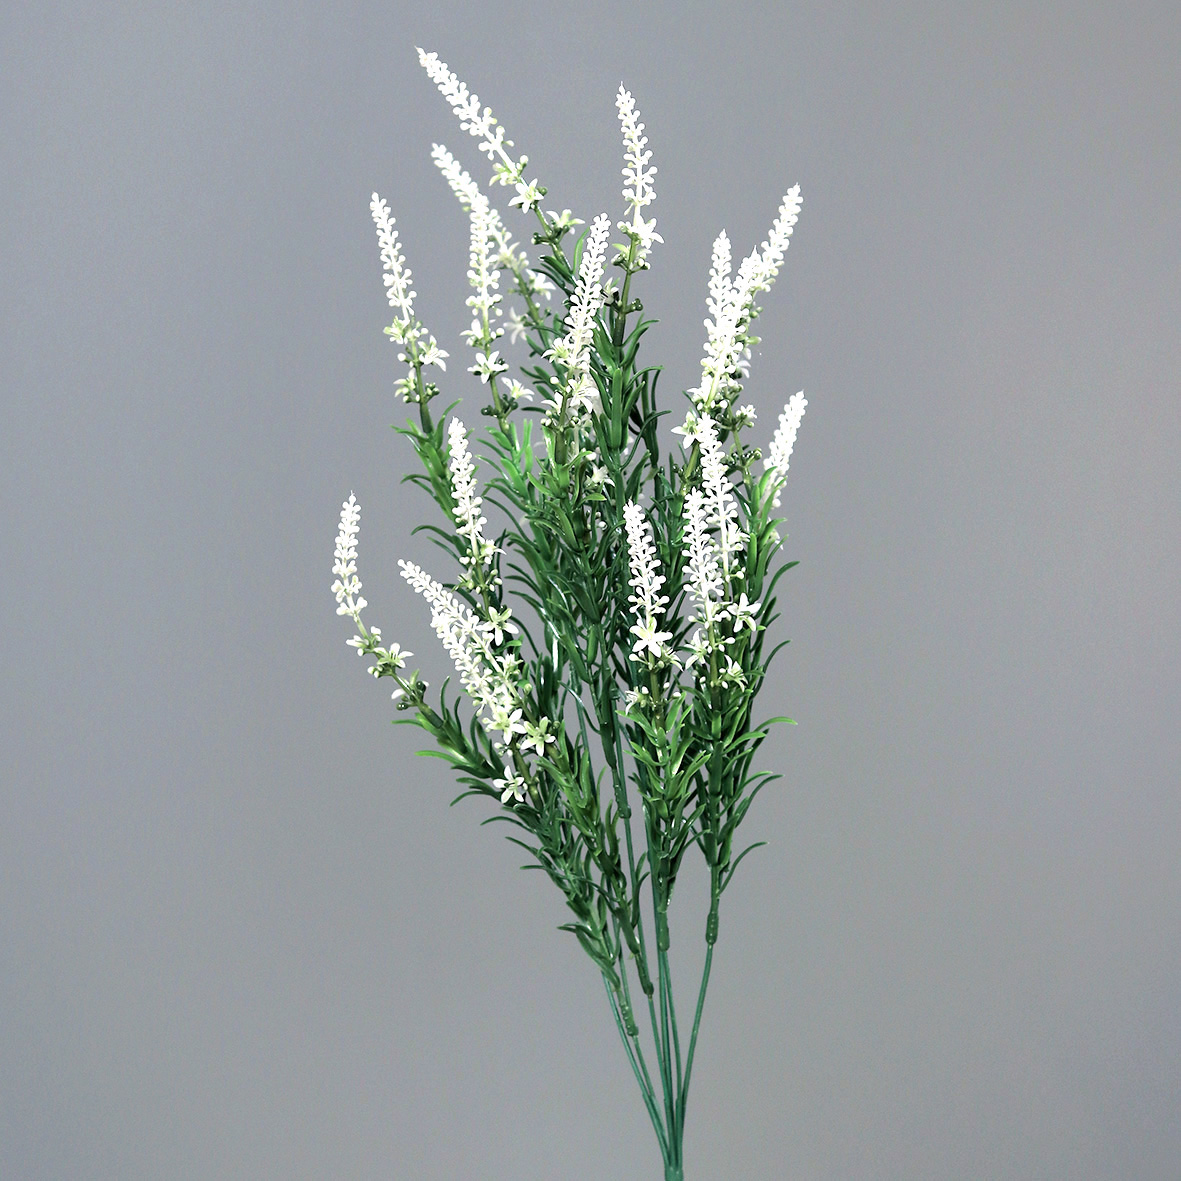 Ehrenpreis / Veronica Busch 60cm weiß -ohne Topf- DP Kunstpflanzen Kunstblumen künstliche Blumen